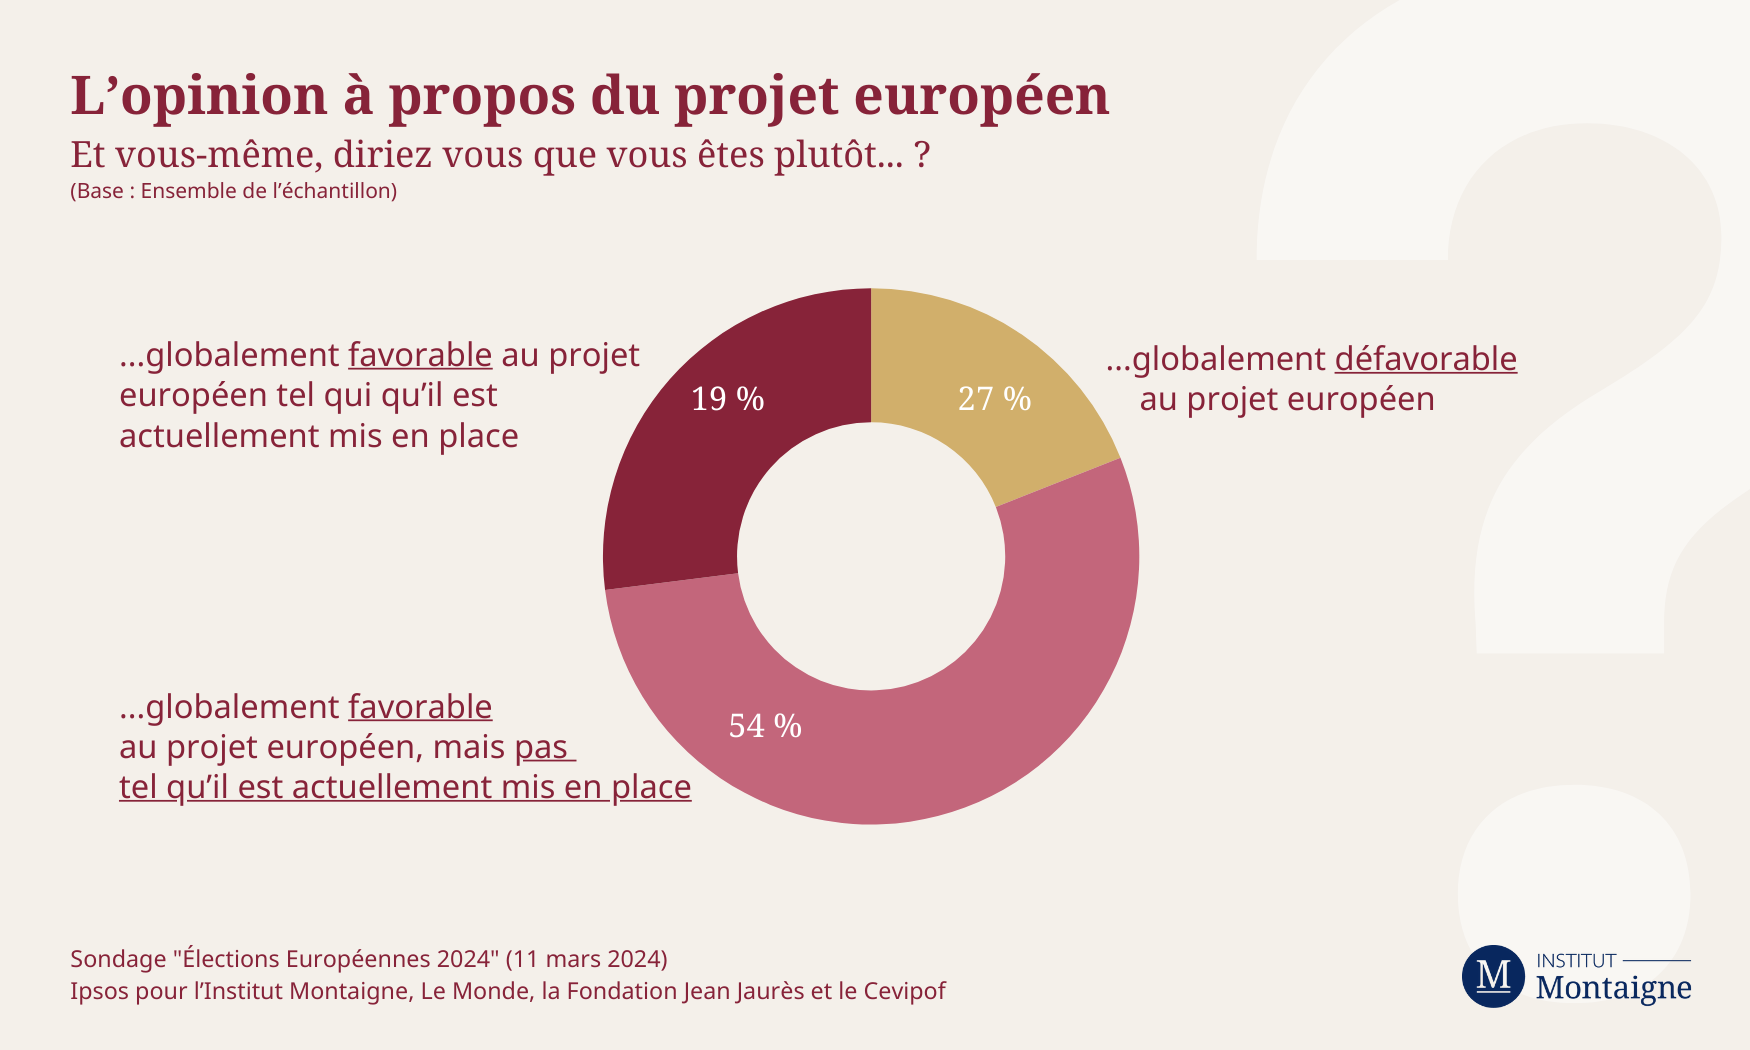 Élections Européennes 2024 - L'opinion sur le projet européen (mars 2024)